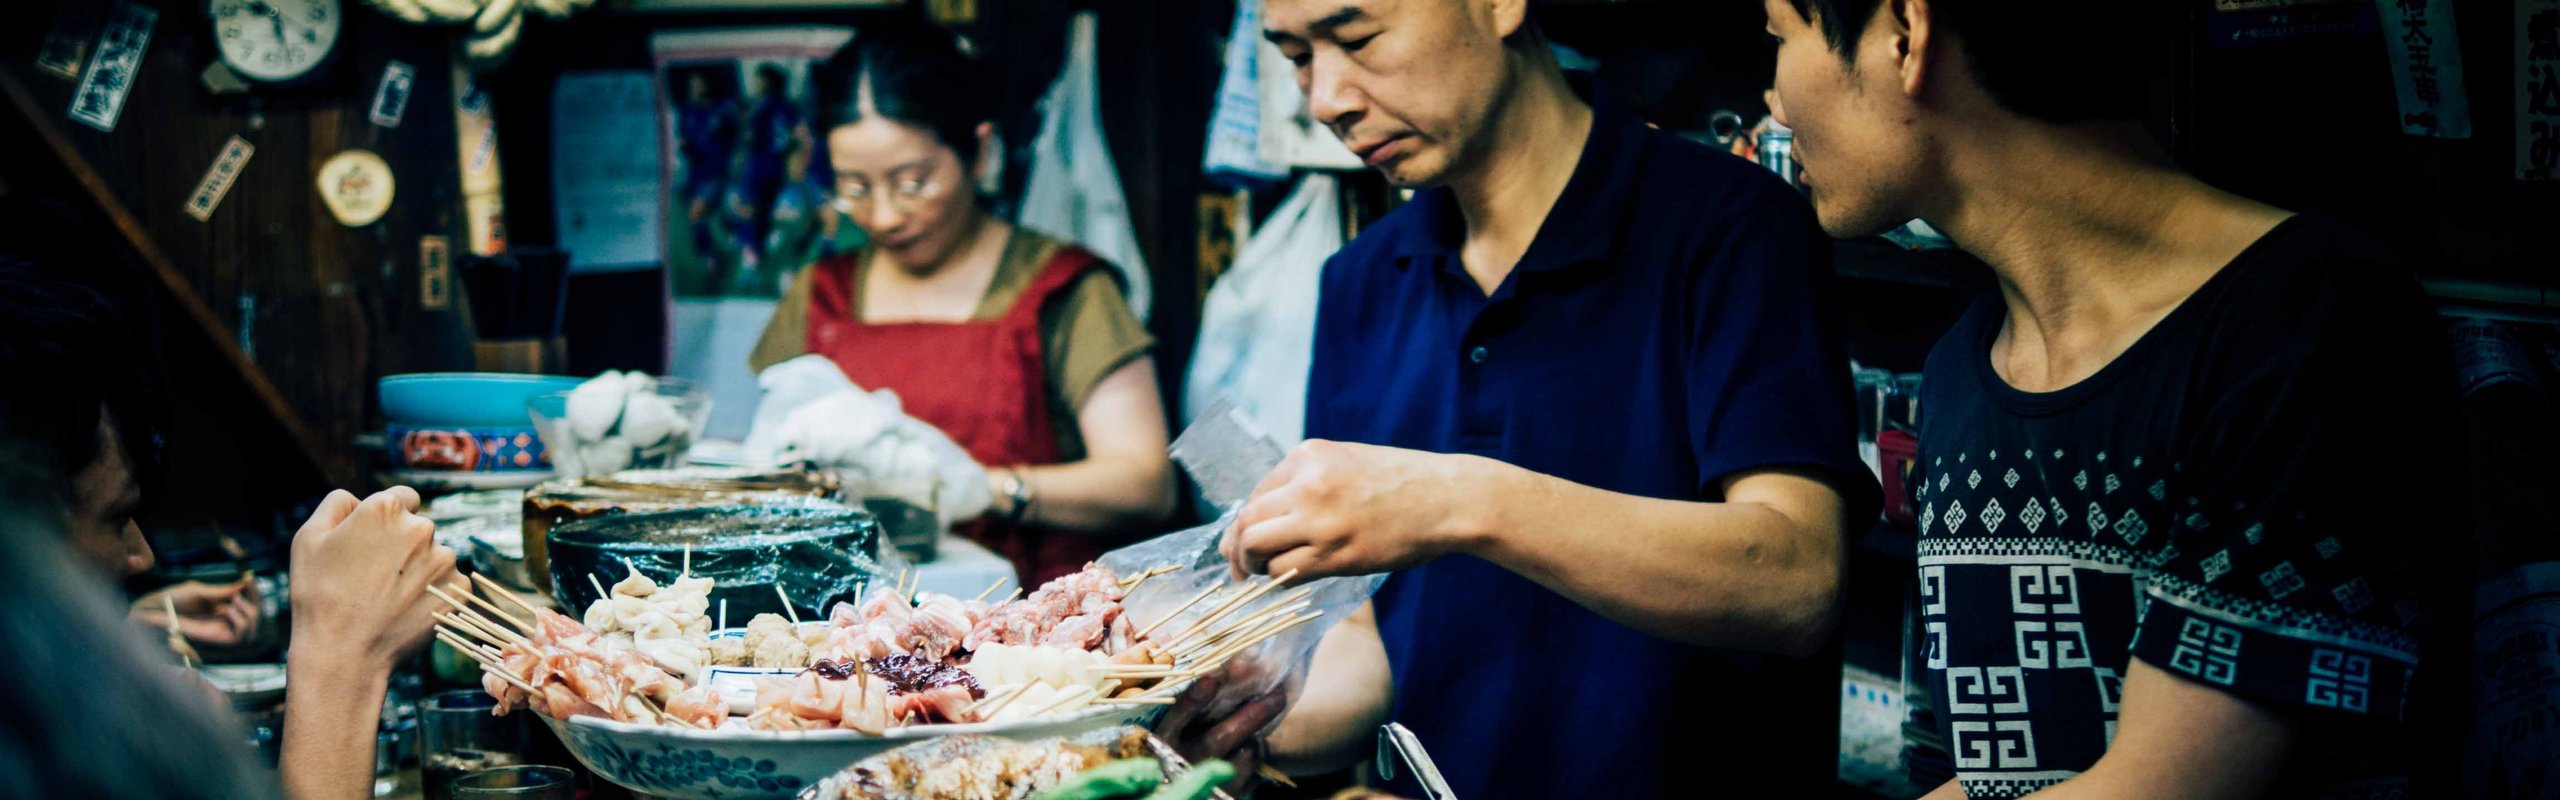 Foto Thailändische authentische Garküche und streetfood